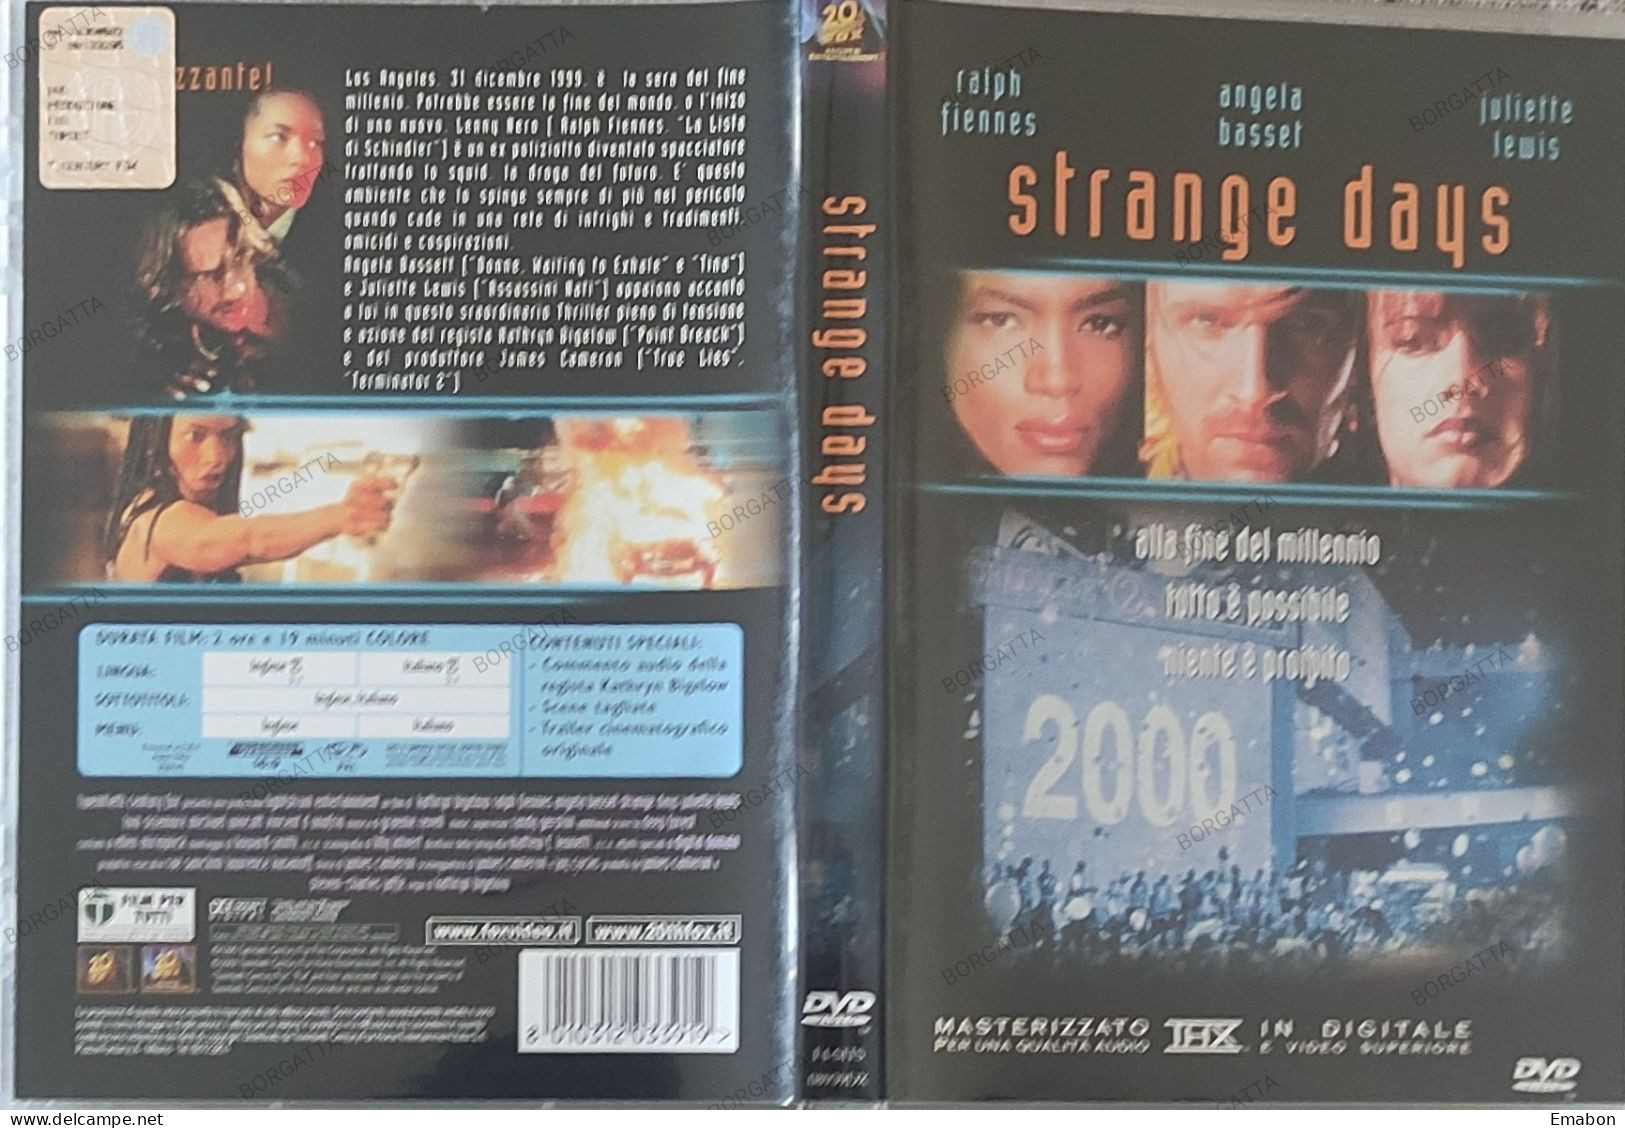 BORGATTA - FANTASCIENZA - Dvd STRANGE DAYS - FIENNES, BASSET  - PAL 2 - 20THFOX 2002- USATO In Buono Stato - Sci-Fi, Fantasy